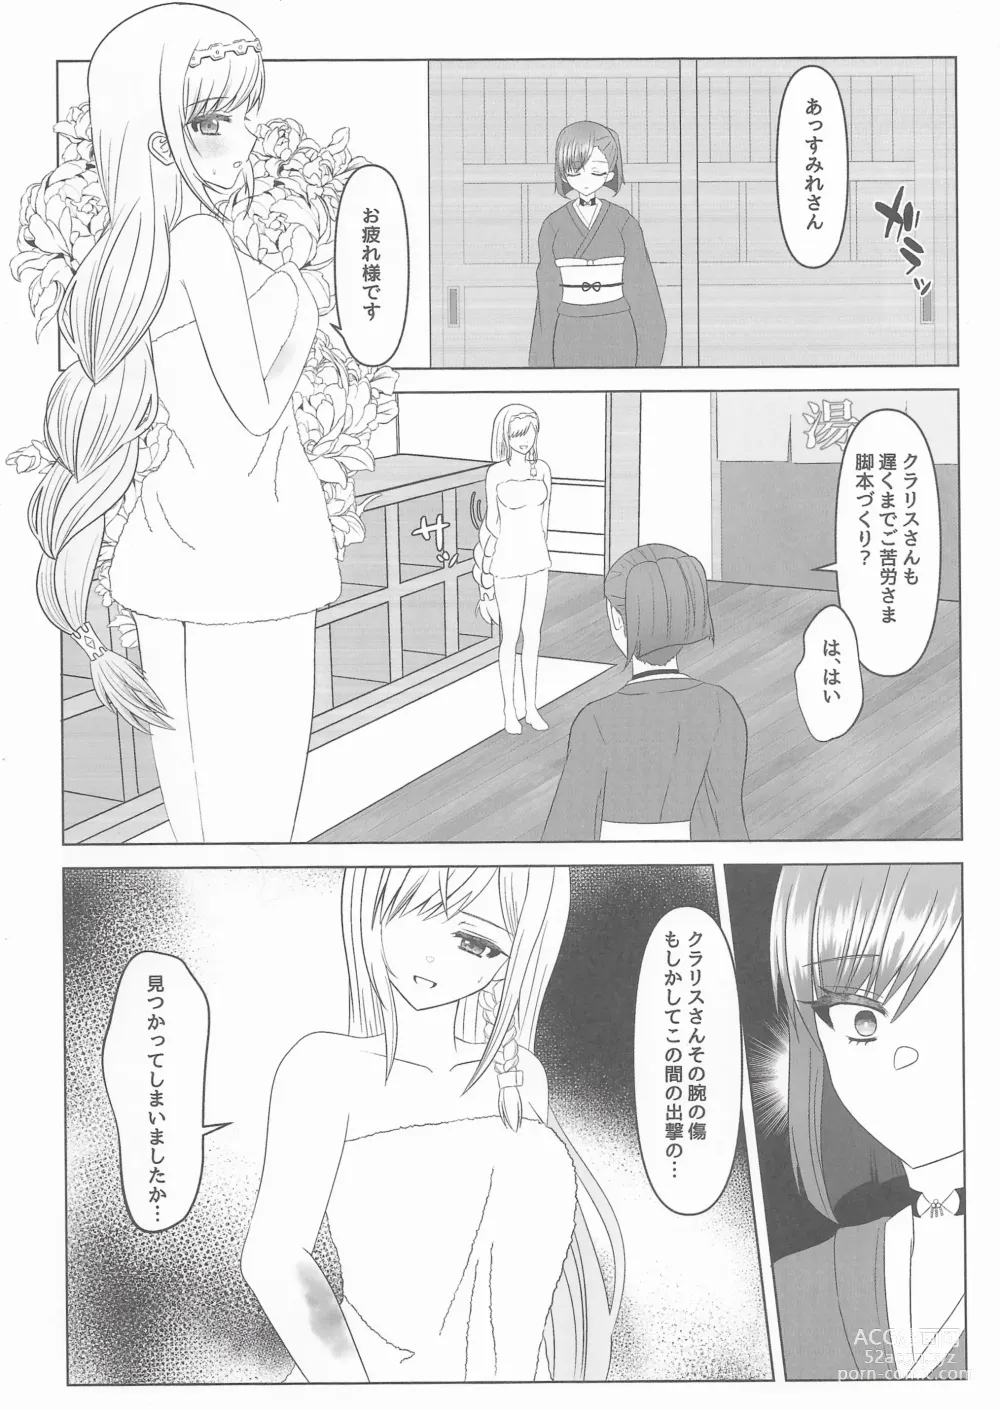 Page 9 of doujinshi Kokkai, Sumire Iro